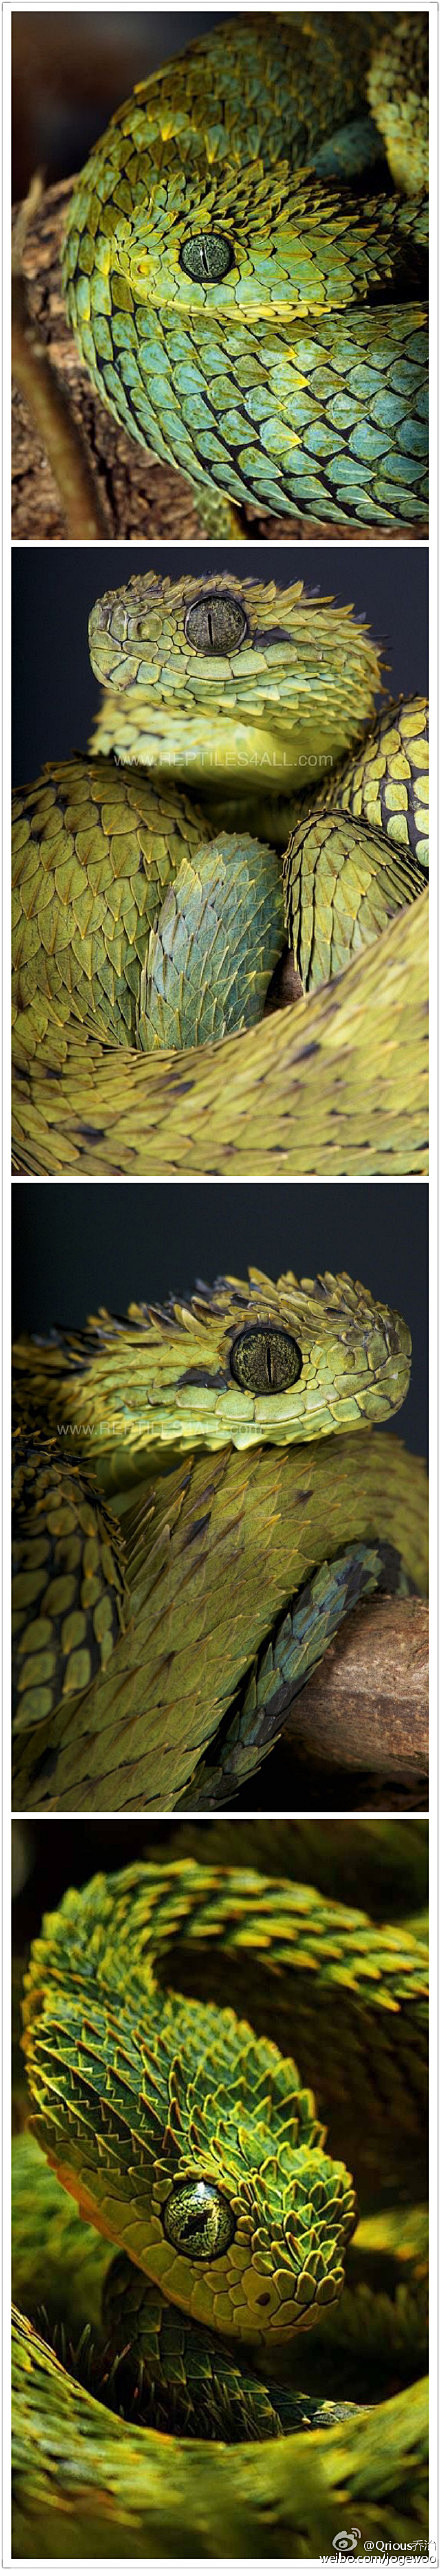 我觉得树蝰#Bush viper#这种蛇...